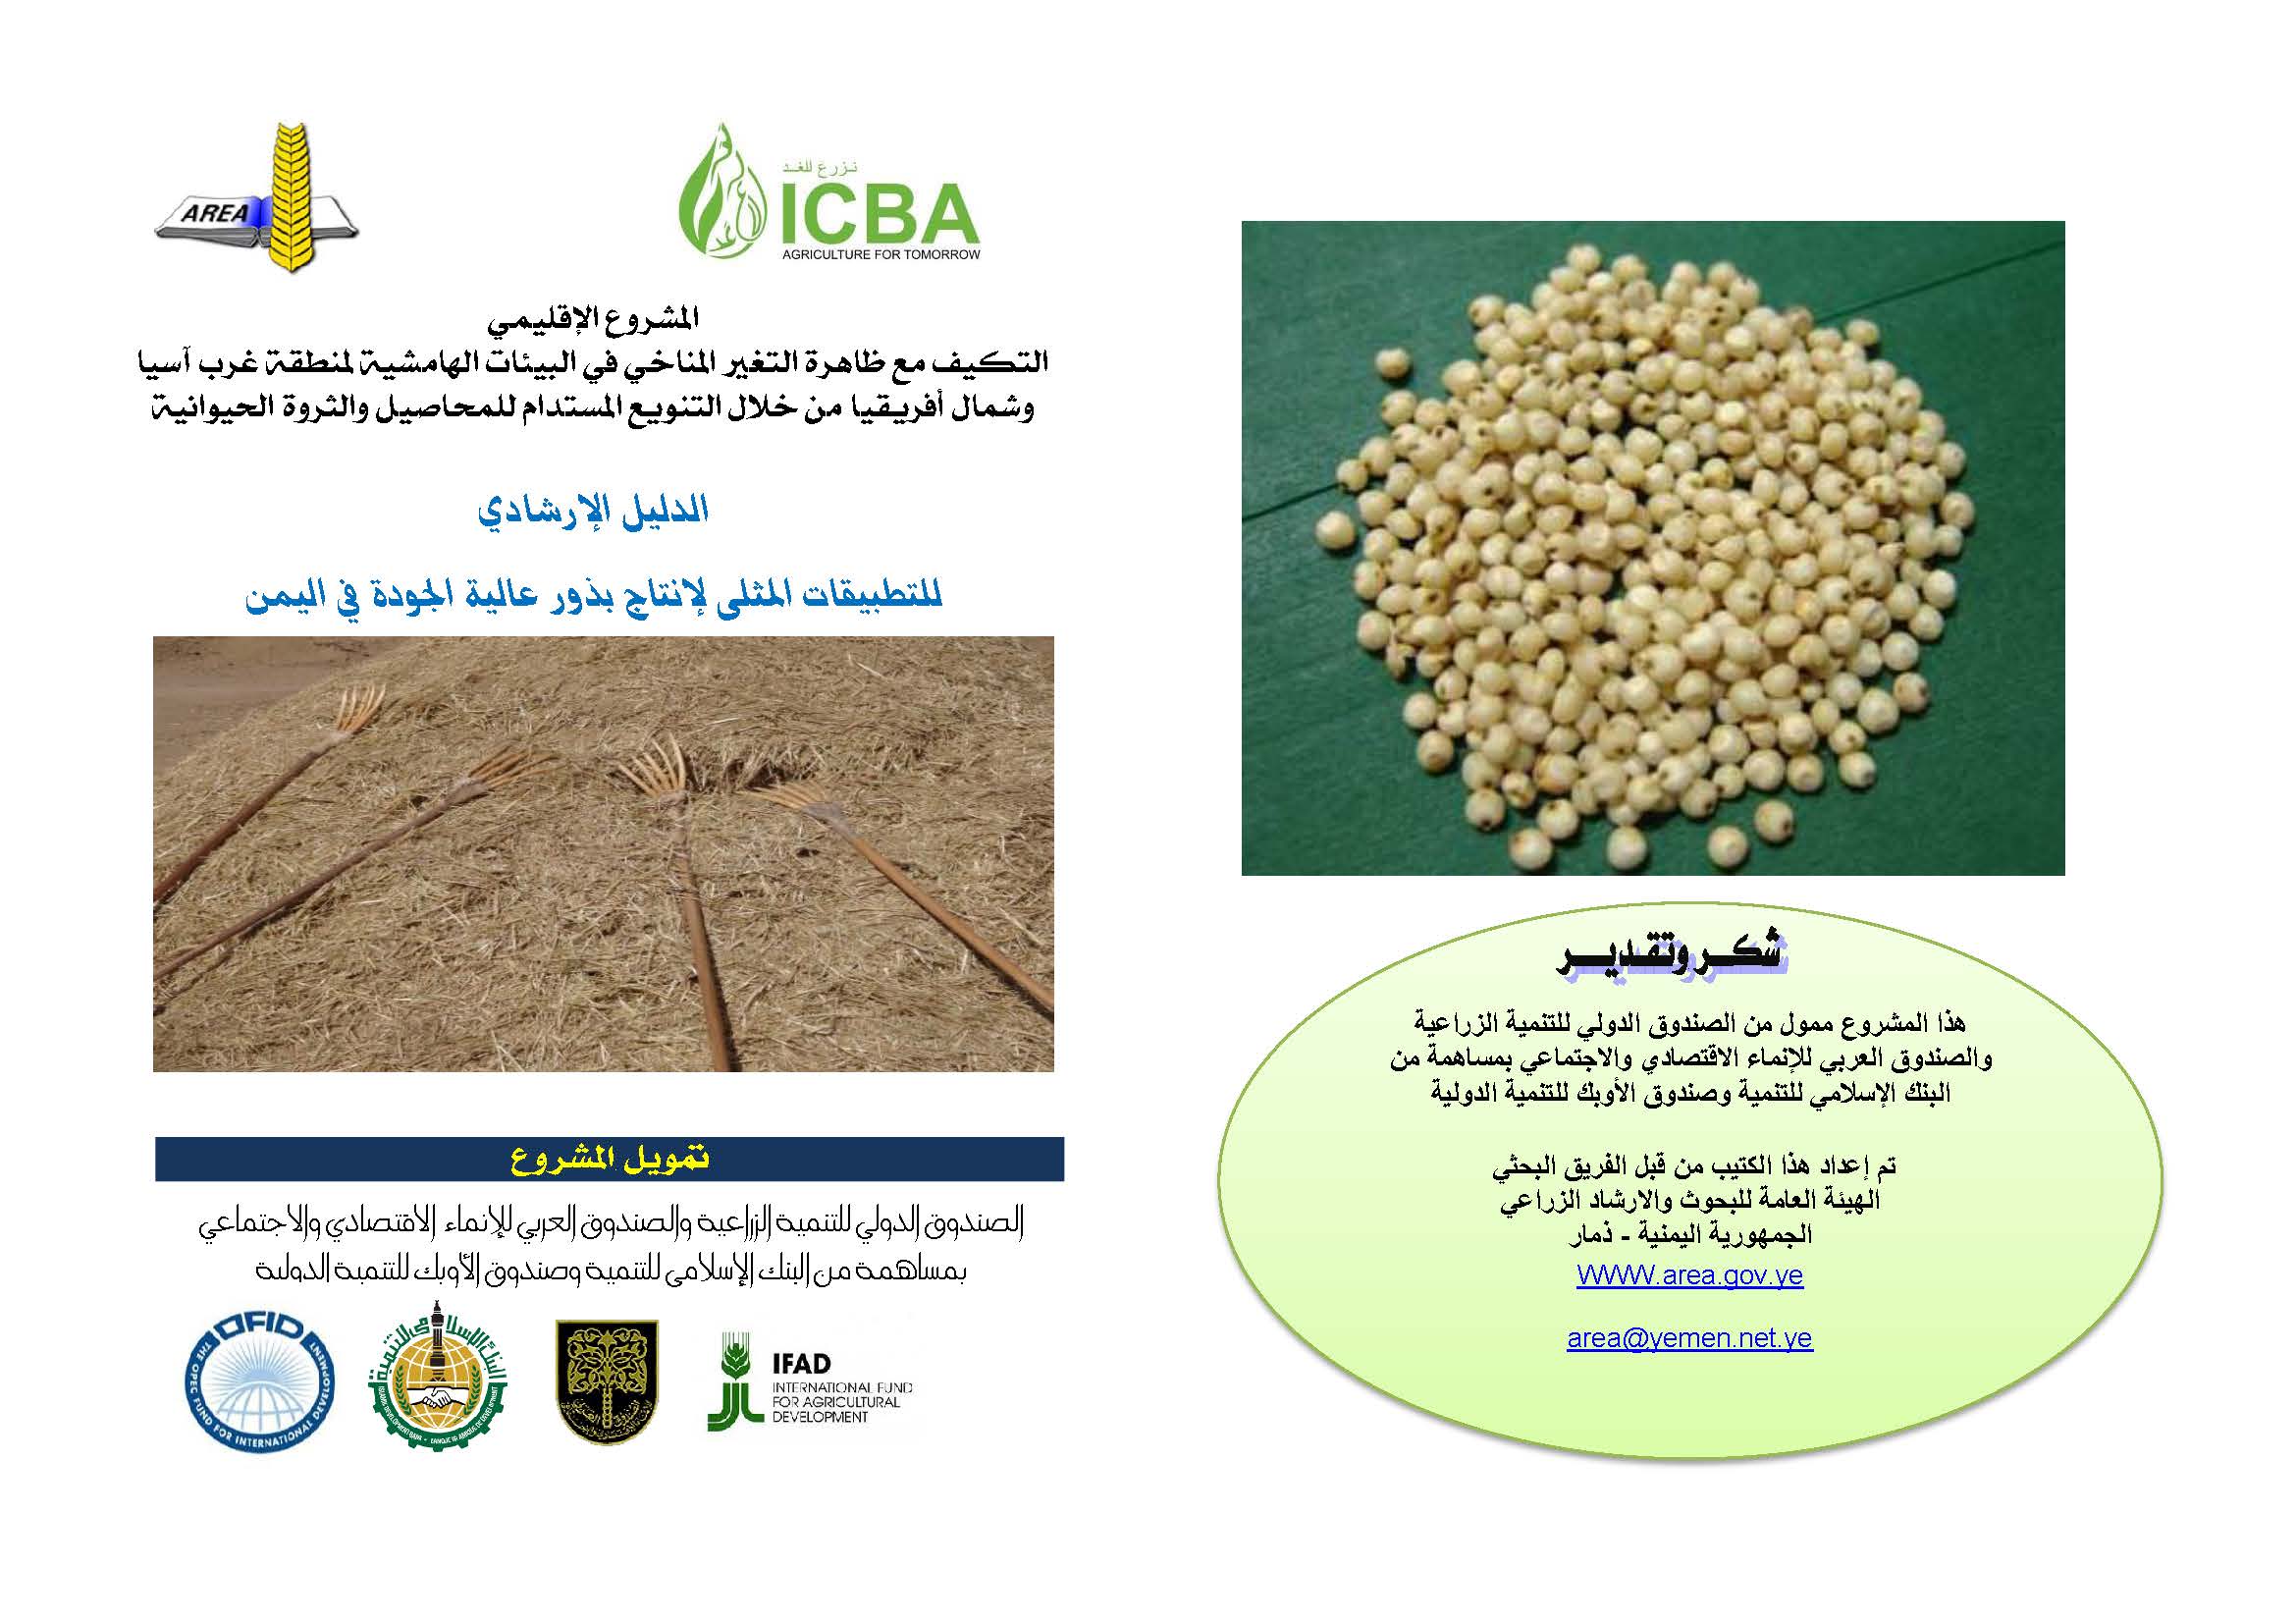 الدليل الإرشادي للتطبيقات المثلى لإنتاج بذور عالية الجودة في اليمن